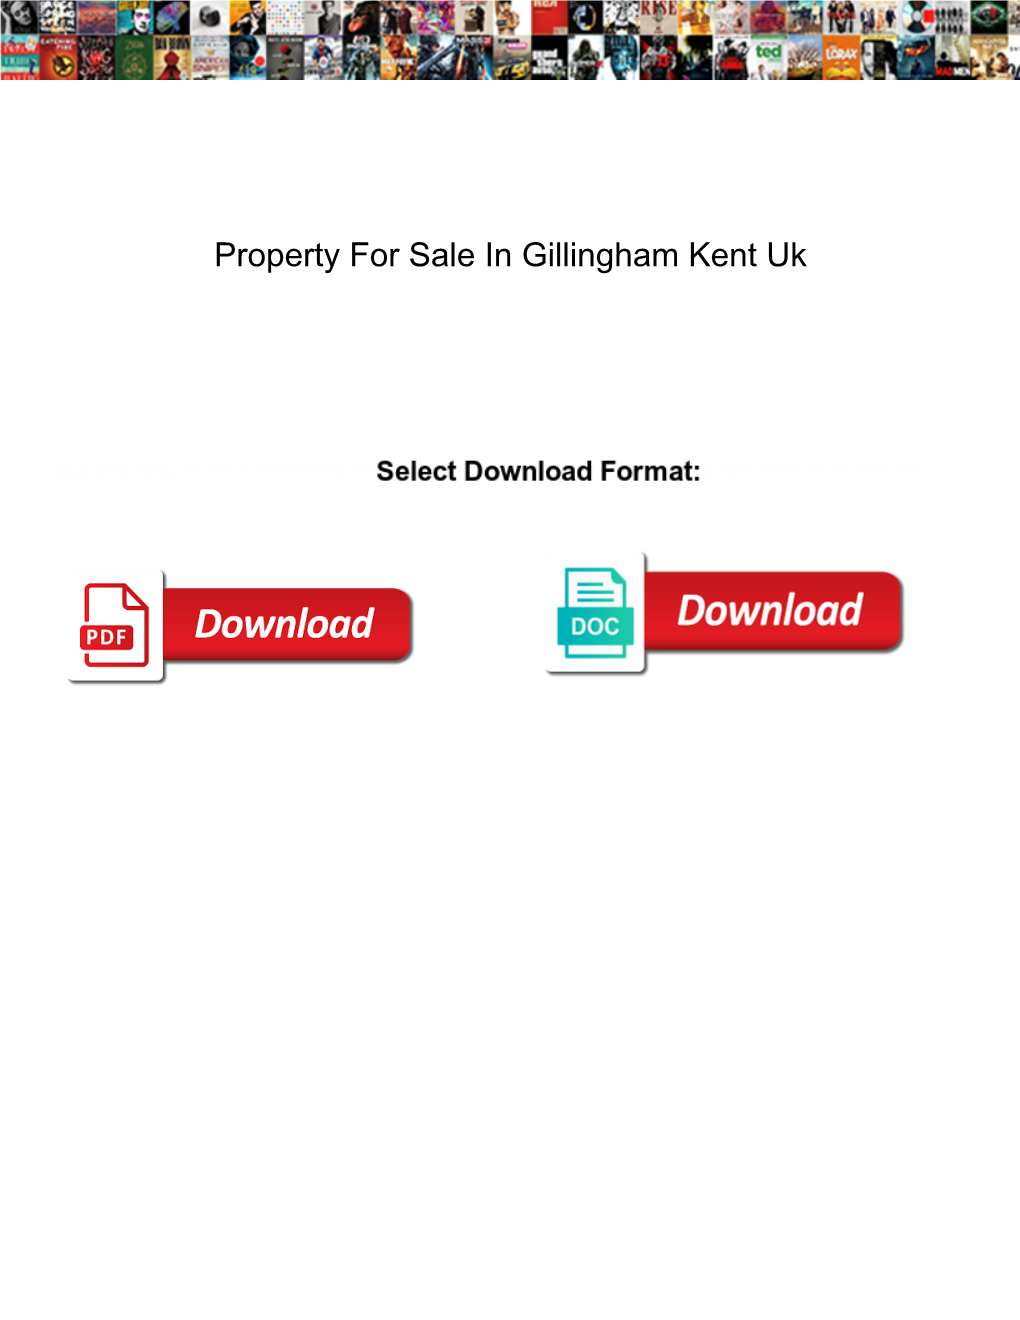 Property for Sale in Gillingham Kent Uk